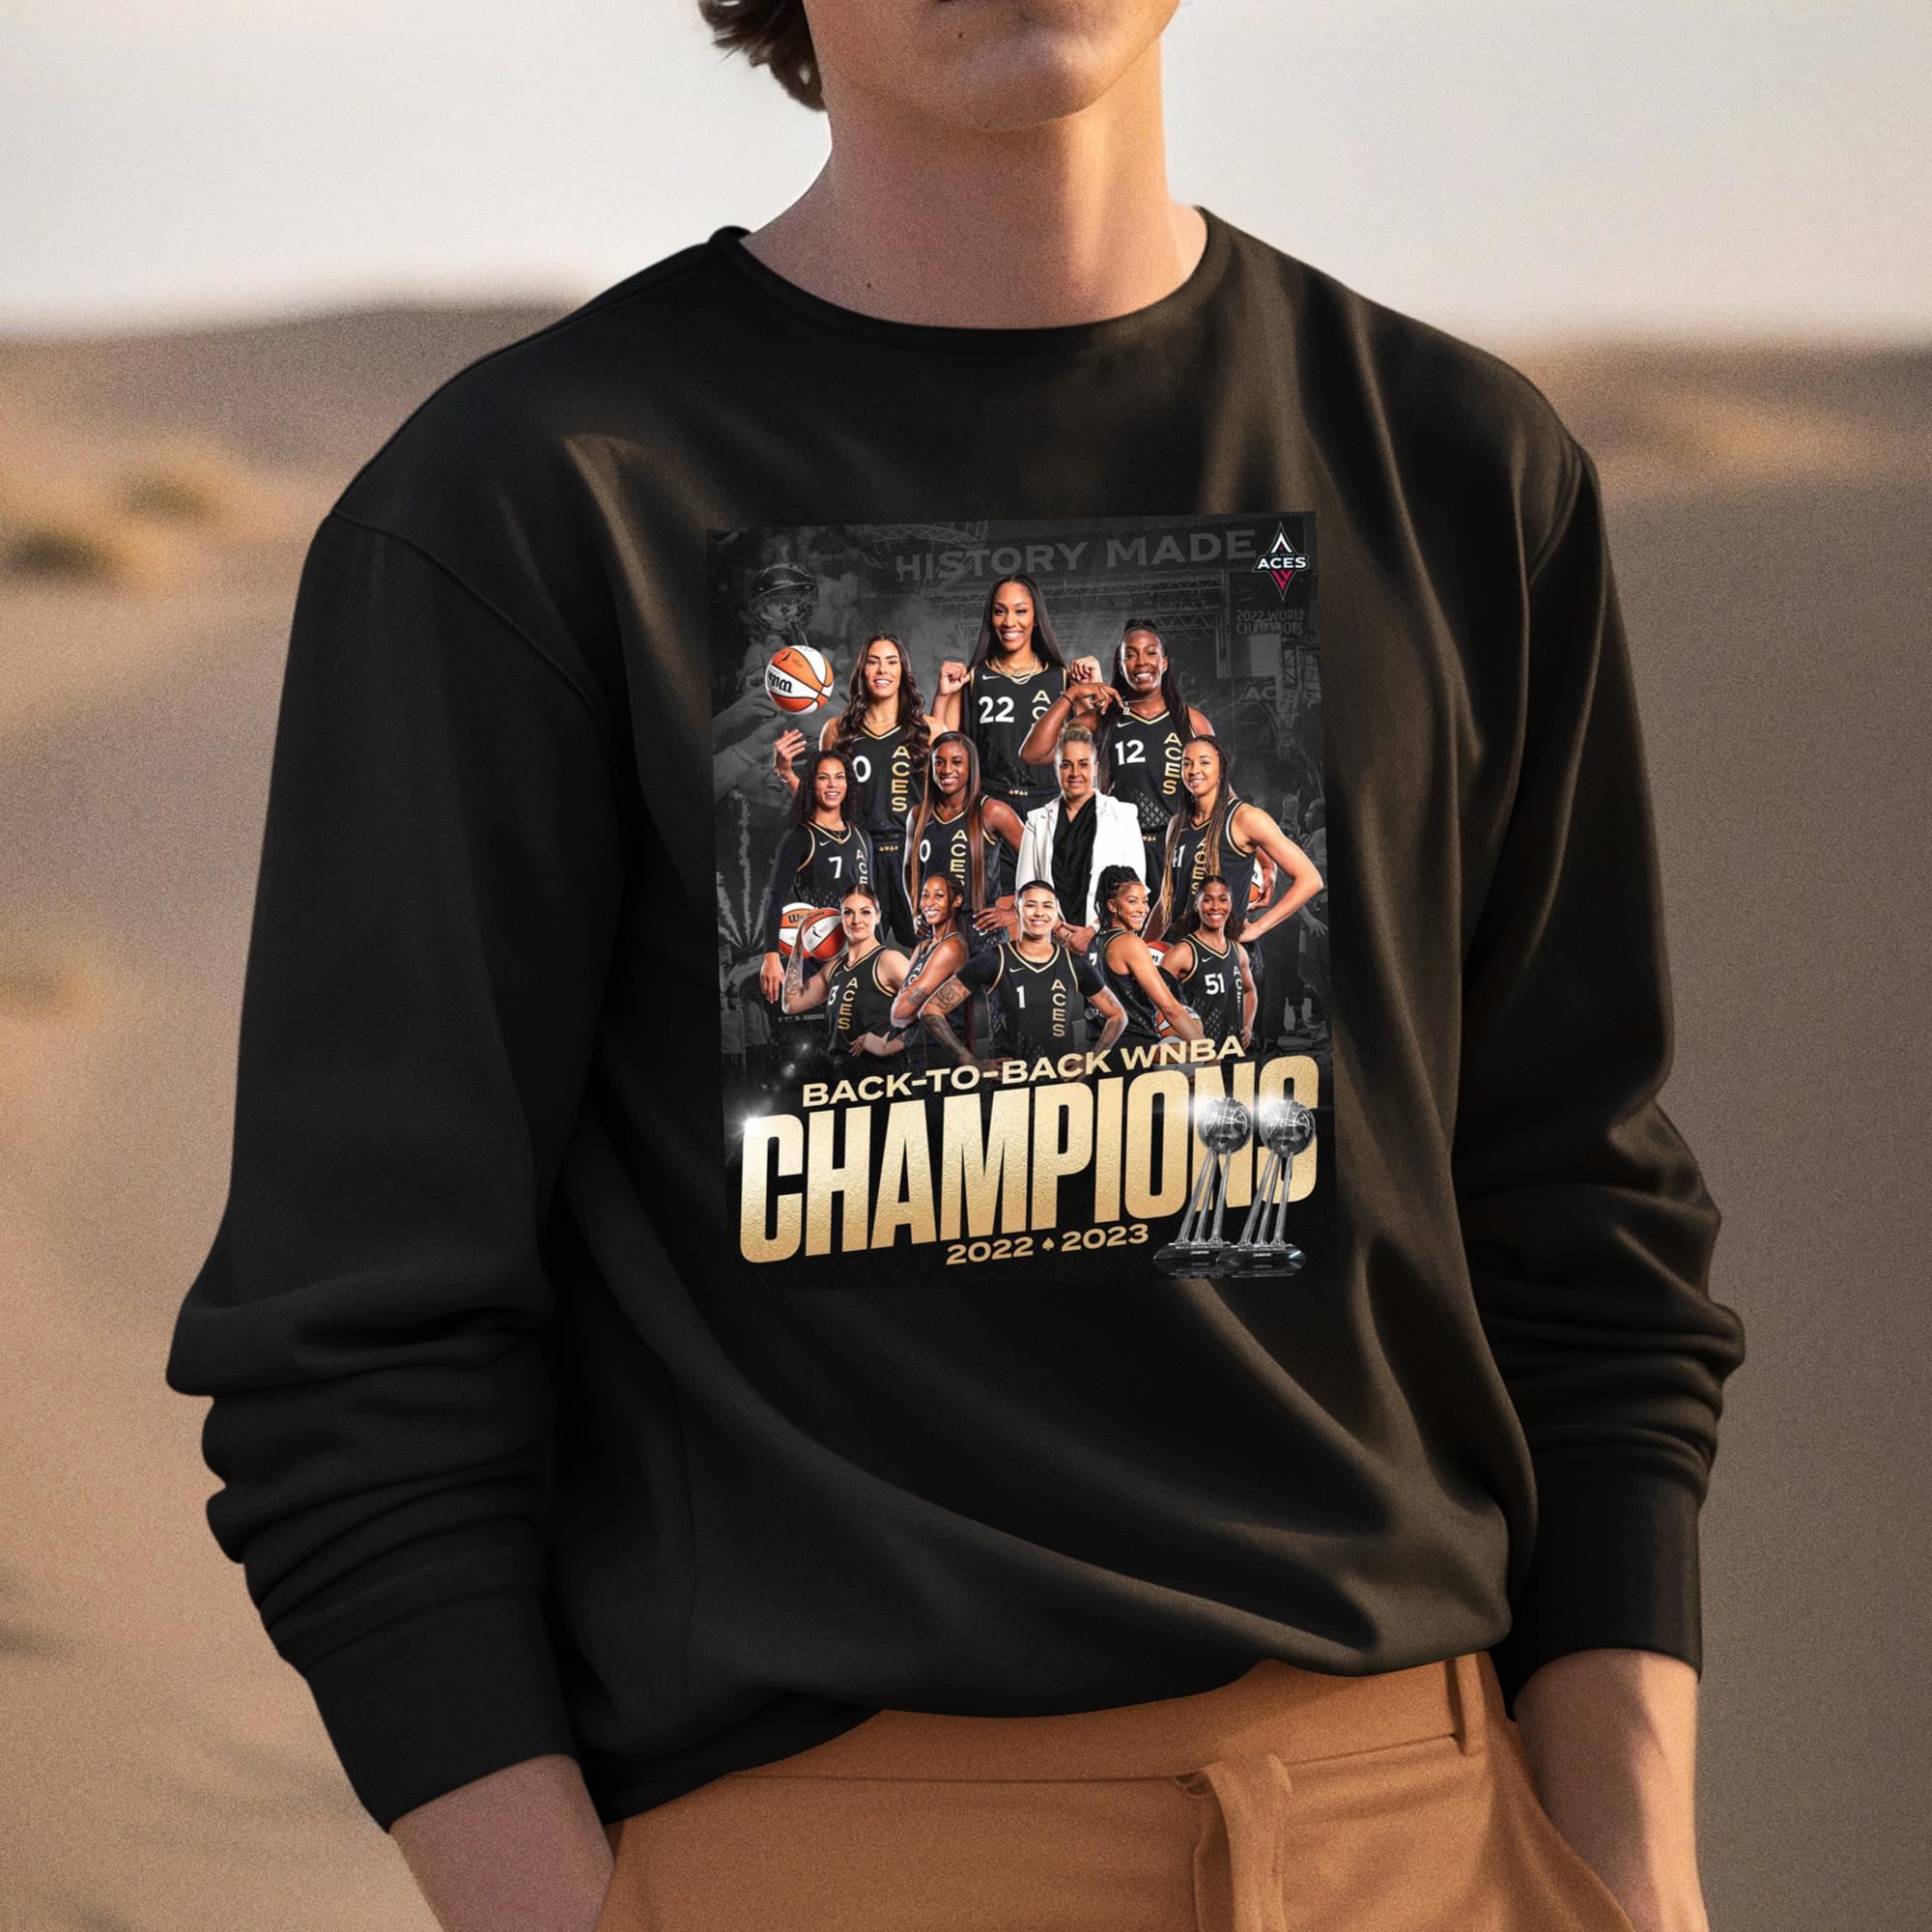 Las Vegas Aces Championship Shirt Sweatshirt Hoodie Mens Womens